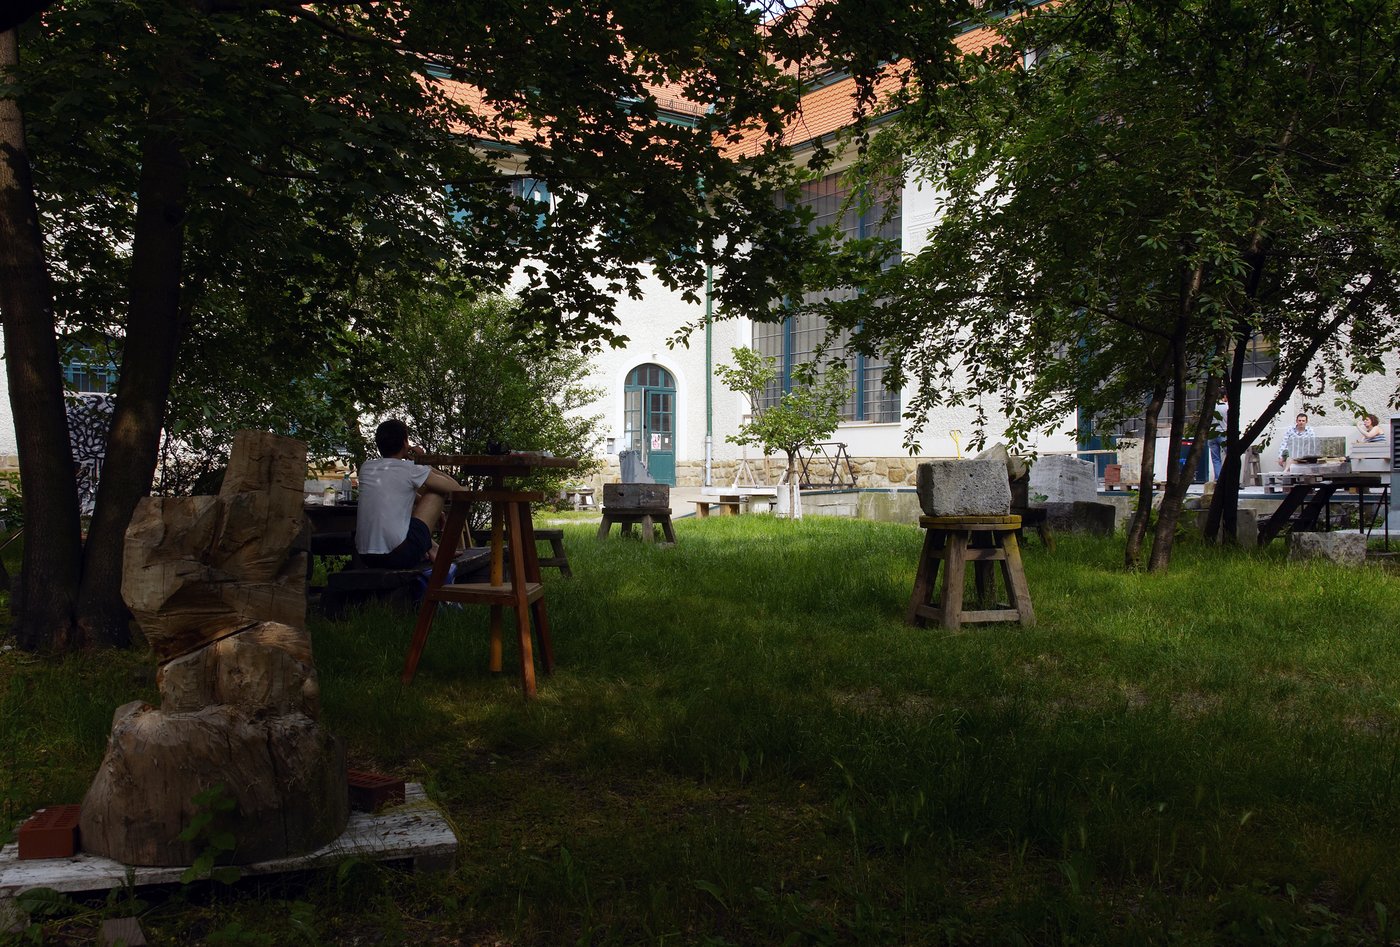 In einem sommerlichen Garten sitzt ein junger Mann, den Rücken zugewandt, die Beine angezogen, mit einem weißen T-Shirt. Er ist umgeben von Holz- und Steinskulpturen. Im Hintergrund sieht man das historische Gebäude mit den großen Atelierfenstern.